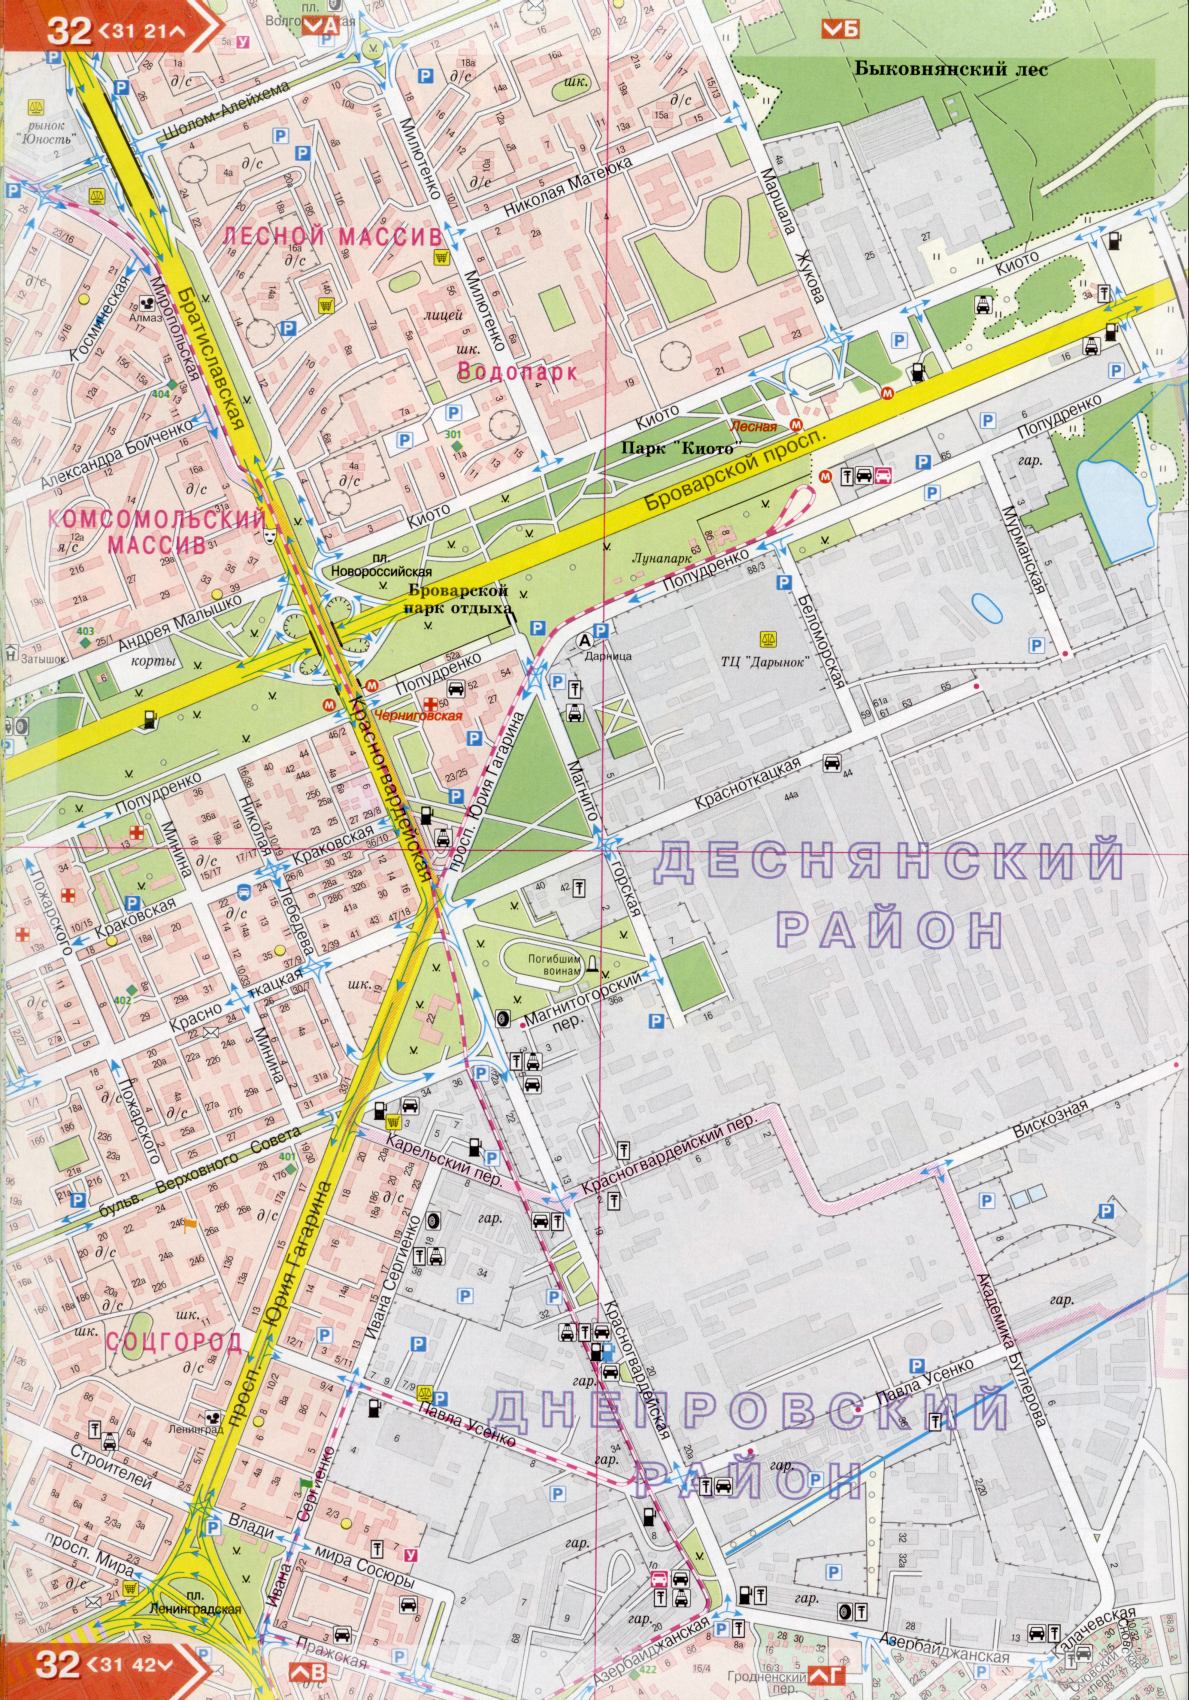 Kiev carte détails 1cm = 150m pour 45 feuilles. Carte de Kiev de l'atlas des routes. Télécharger une carte détaillée, I2